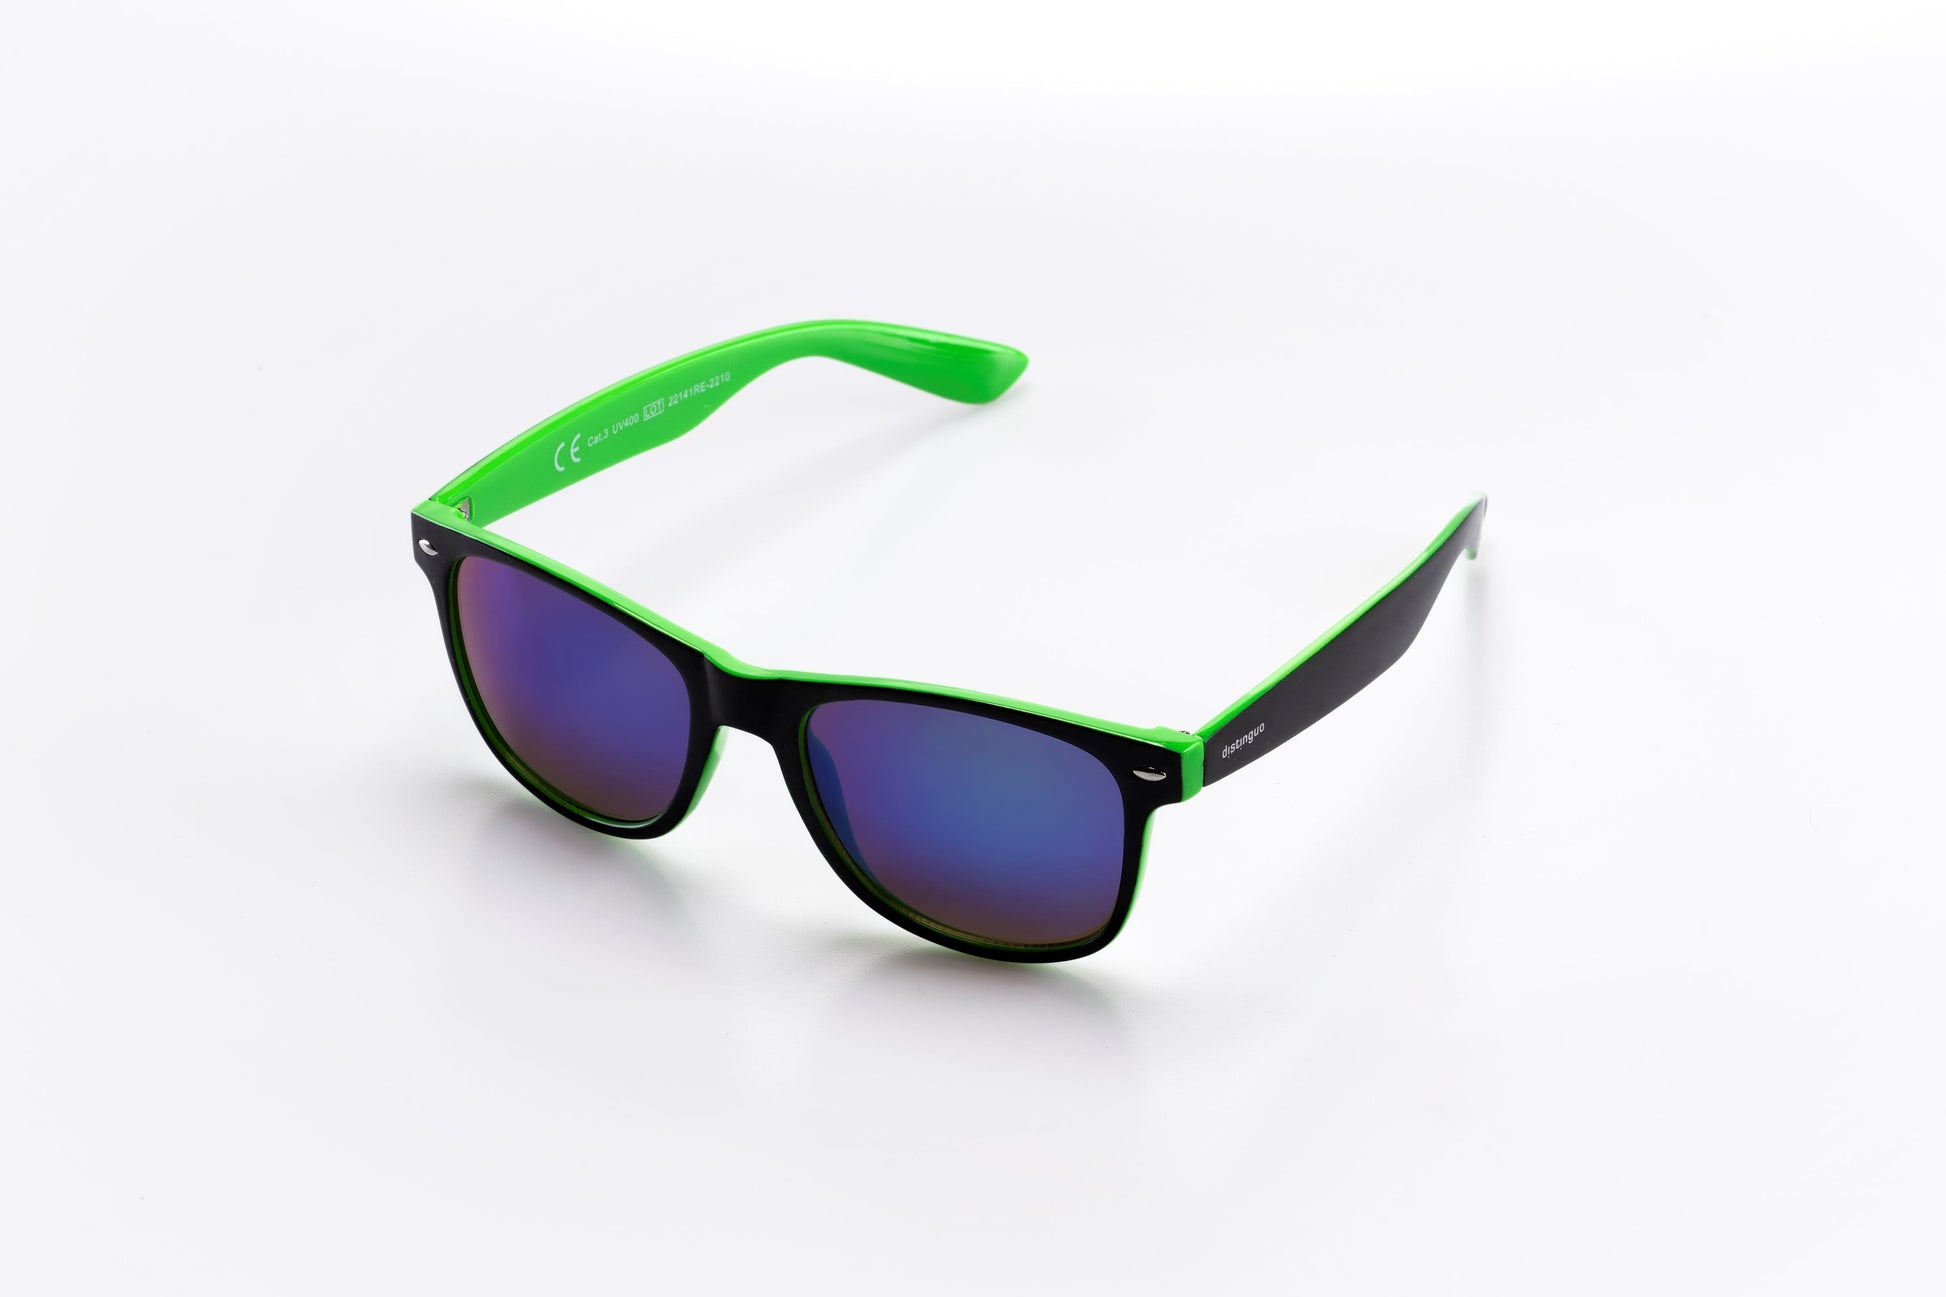 Occhiali da sole Distinguo 502.3 modello Sportivo, montatura in policarbonato nero-verde con lenti  effetto specchio colore verde.